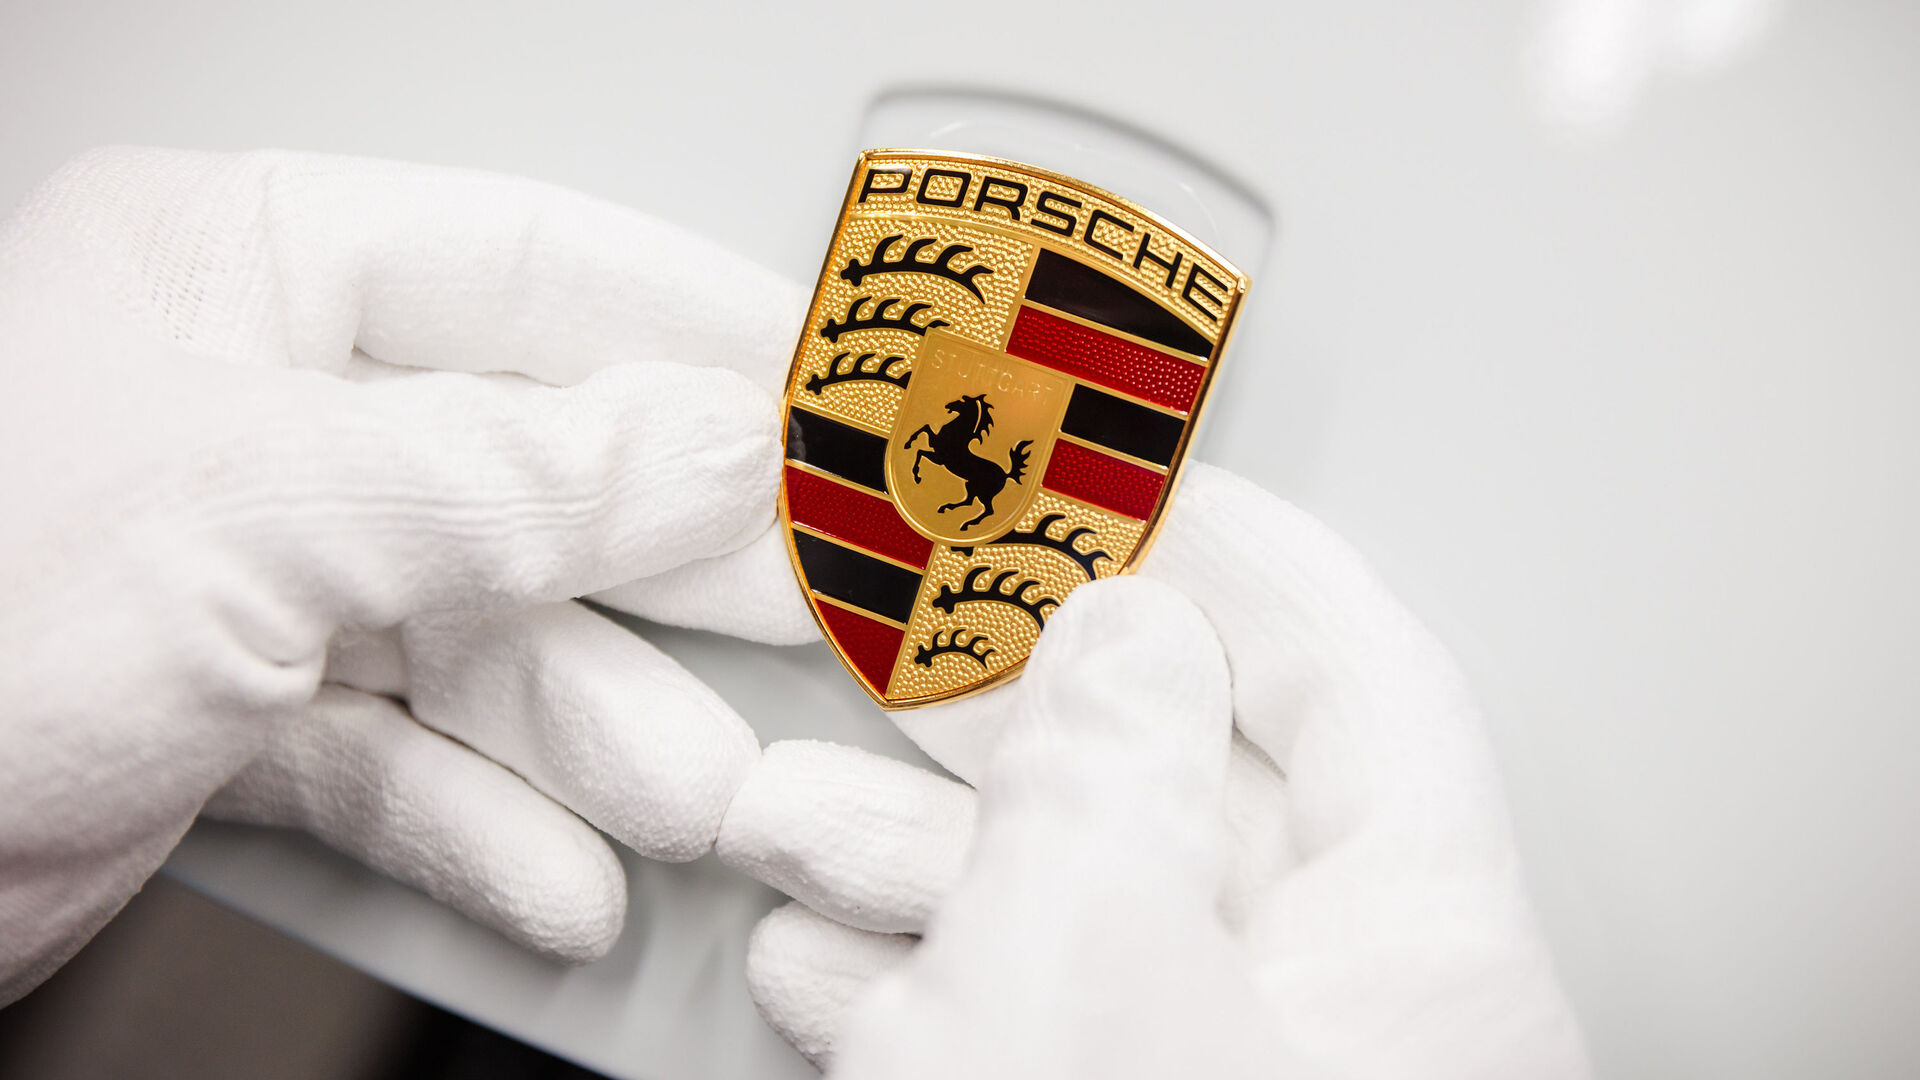 Porsche Safety